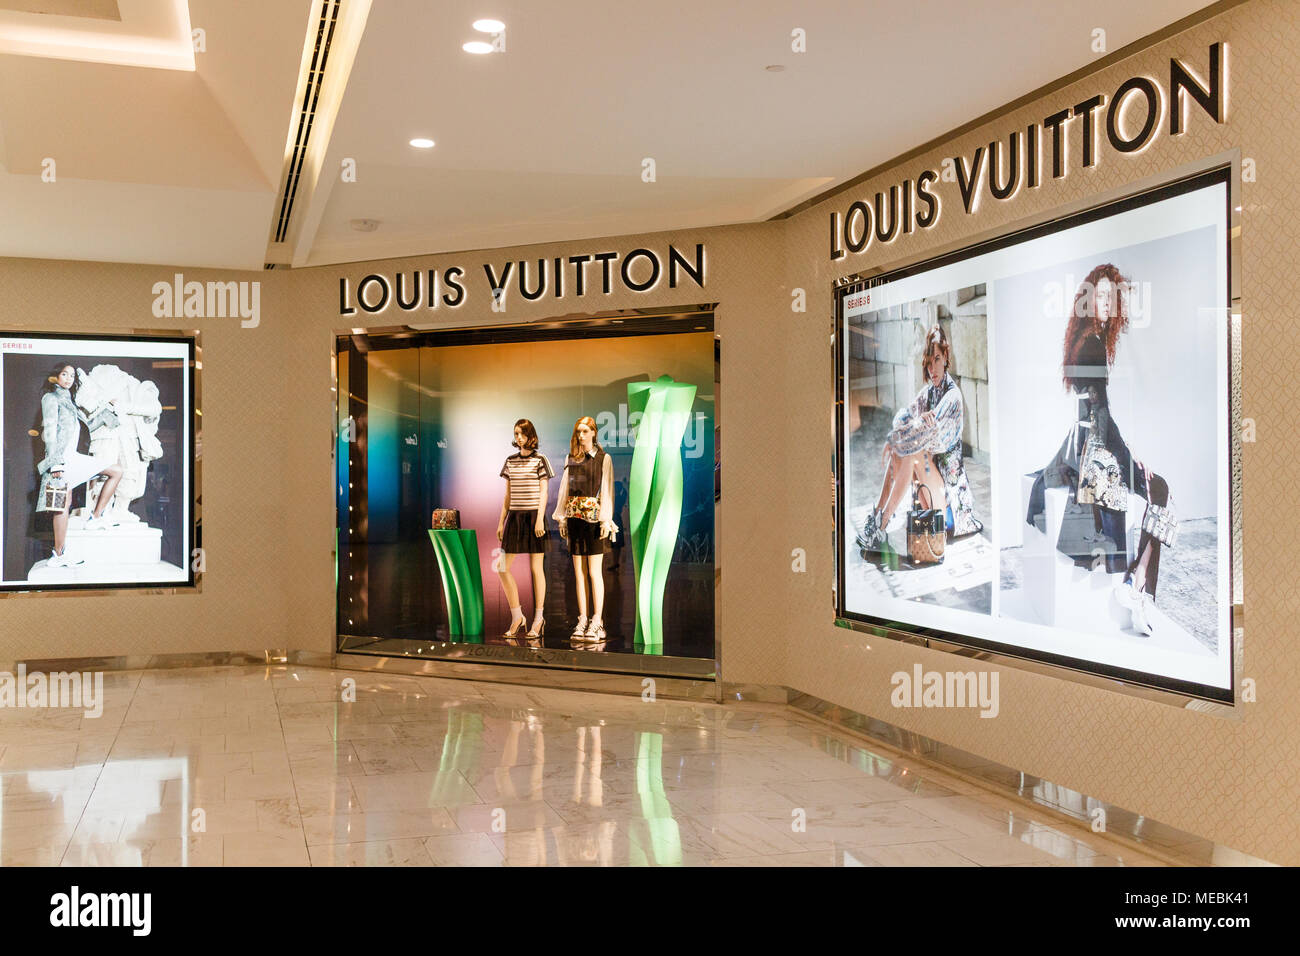 Louis Vuitton shop, Emporium shopping mall, Bangkok, Thailand Stock Photo -  Alamy